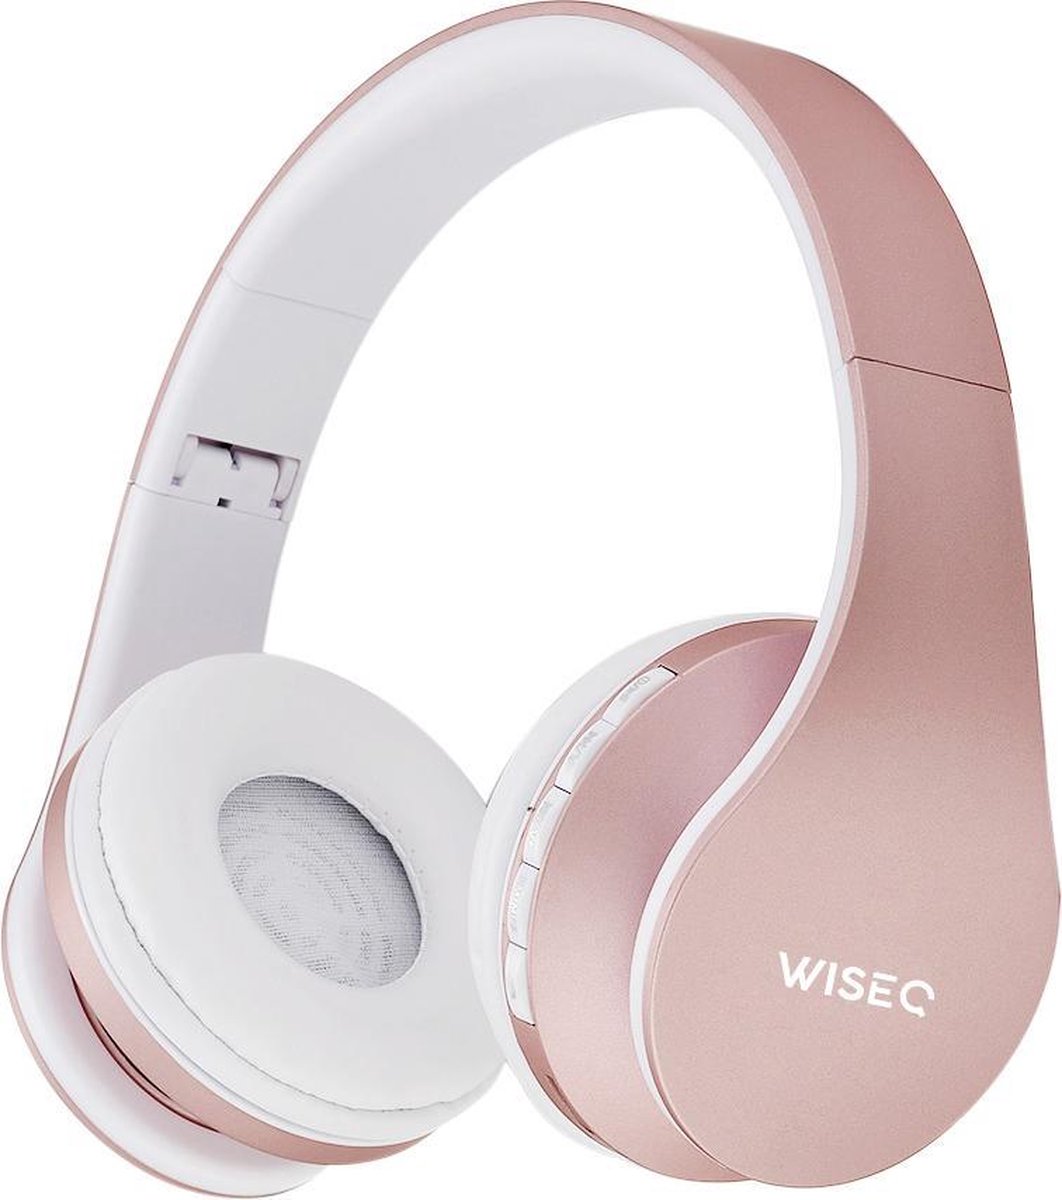 WiseQ Draadloze Koptelefoon Voor Kinderen - Bluetooth 5.0 - Roze - Over Ear - Kinderkoptelefoon